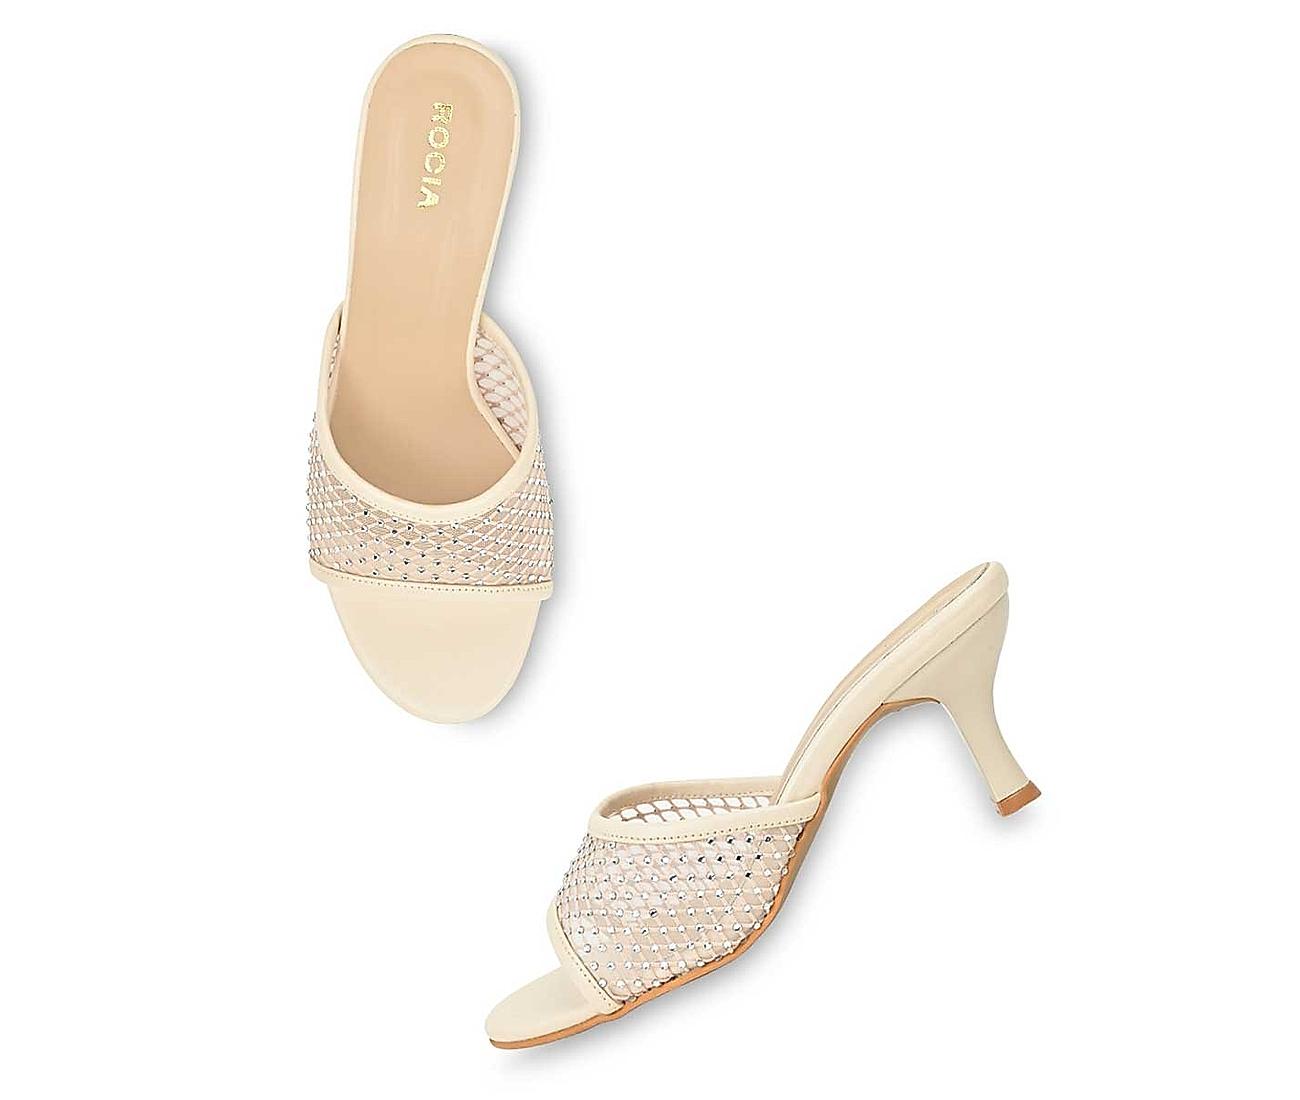 Super High Heels Double Strap Sandals Women Sexy Nightclub Catwalk Stiletto  Shoe | eBay